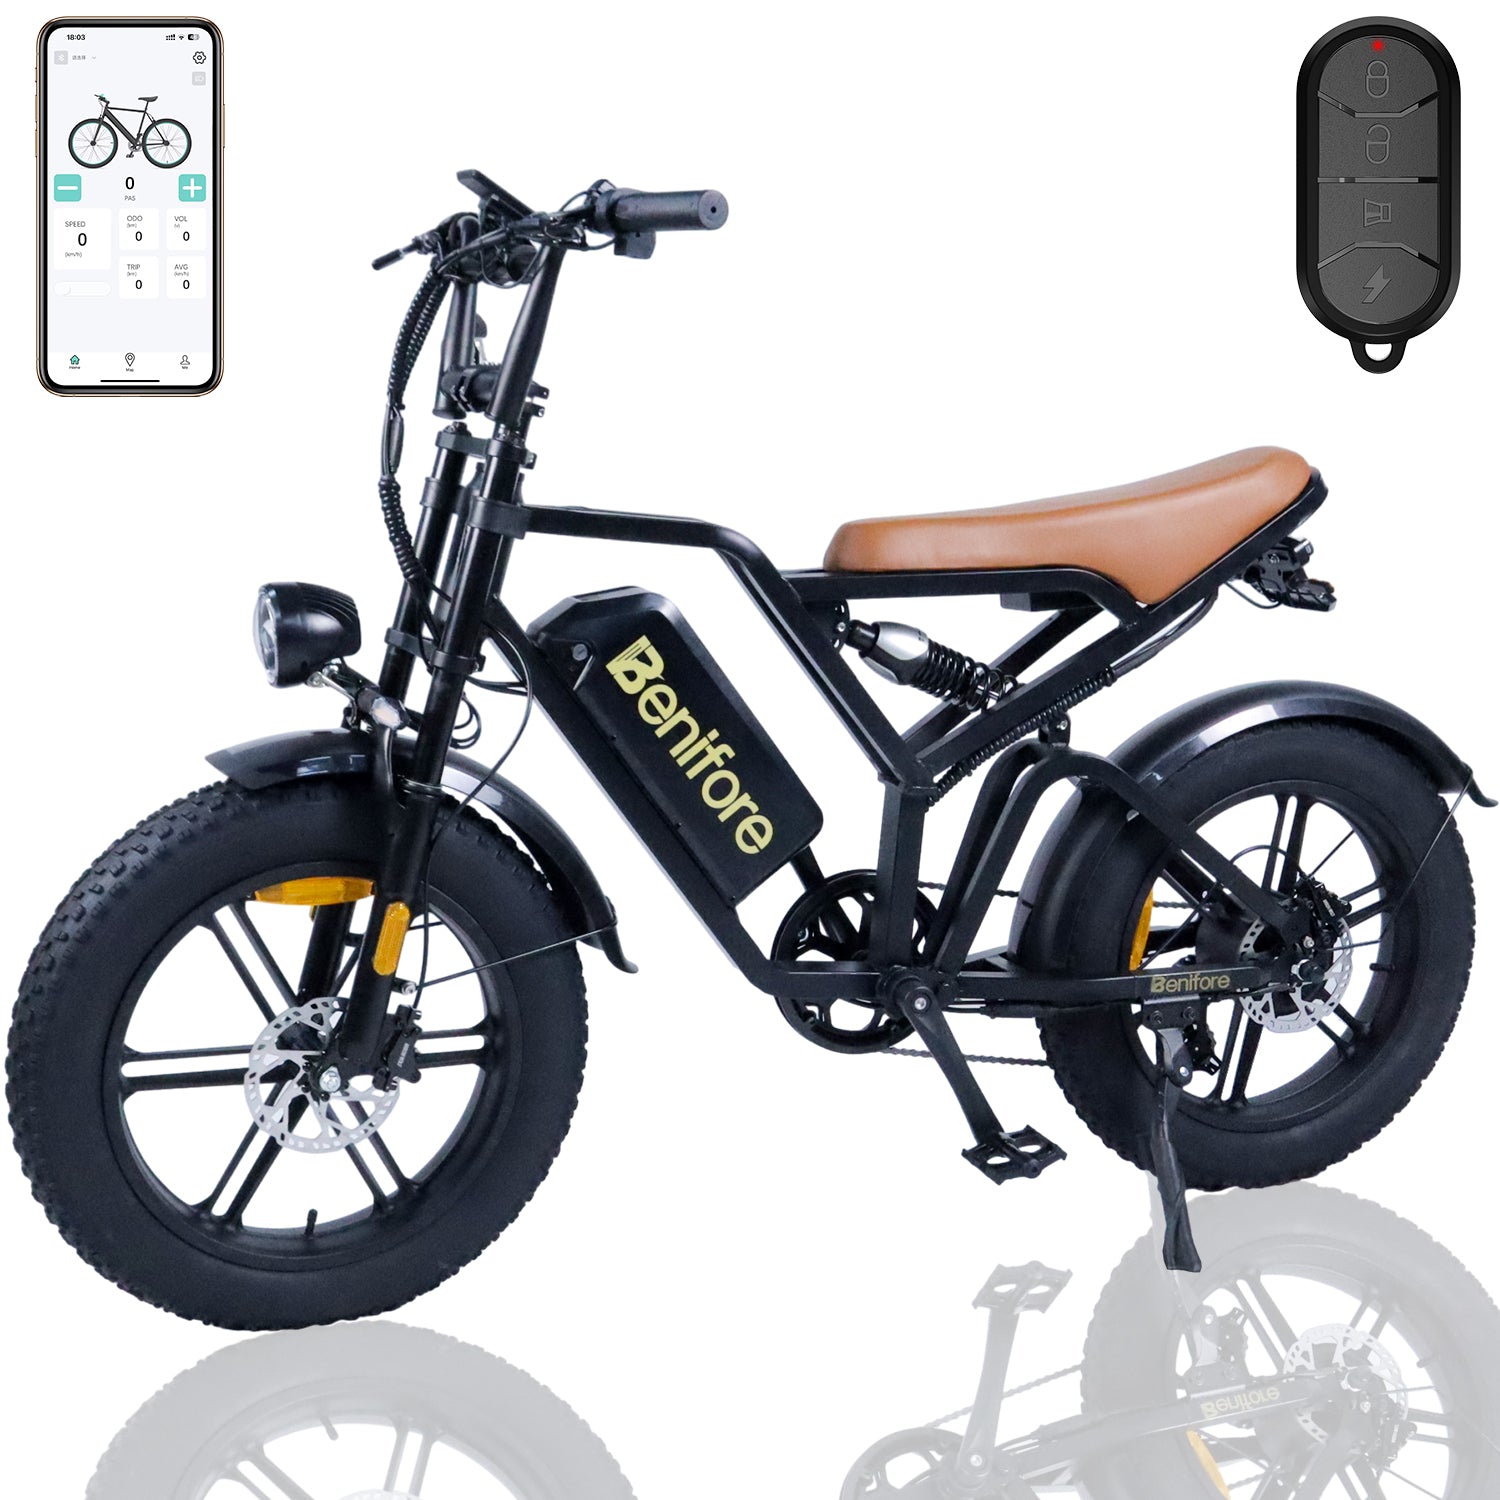 Benifore B20 Electric Motor Bike